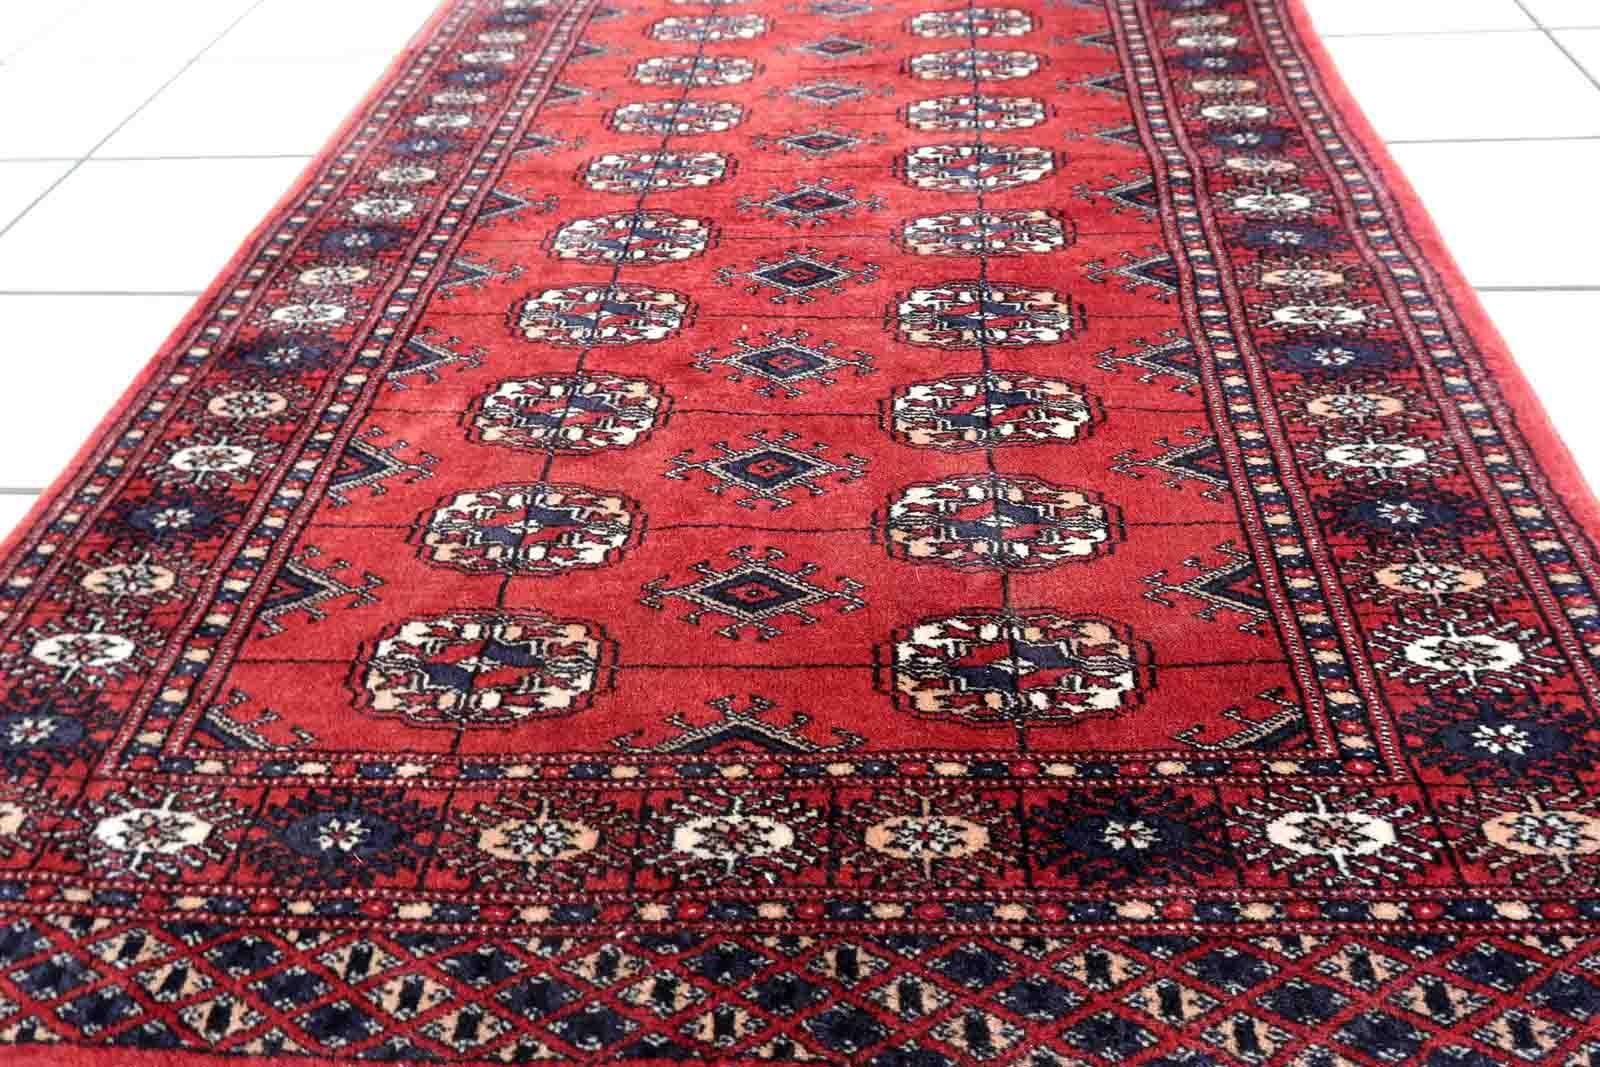 Handgefertigter roter Vintage-Teppich im Buchara-Design. Der Teppich ist in gutem Originalzustand und stammt aus dem Ende des 20.

-Zustand: original gut,

-Umgebung: 1970er Jahre,

-Größe: 2,6' x 3,9' (81cm x 119cm),

-MATERIAL: